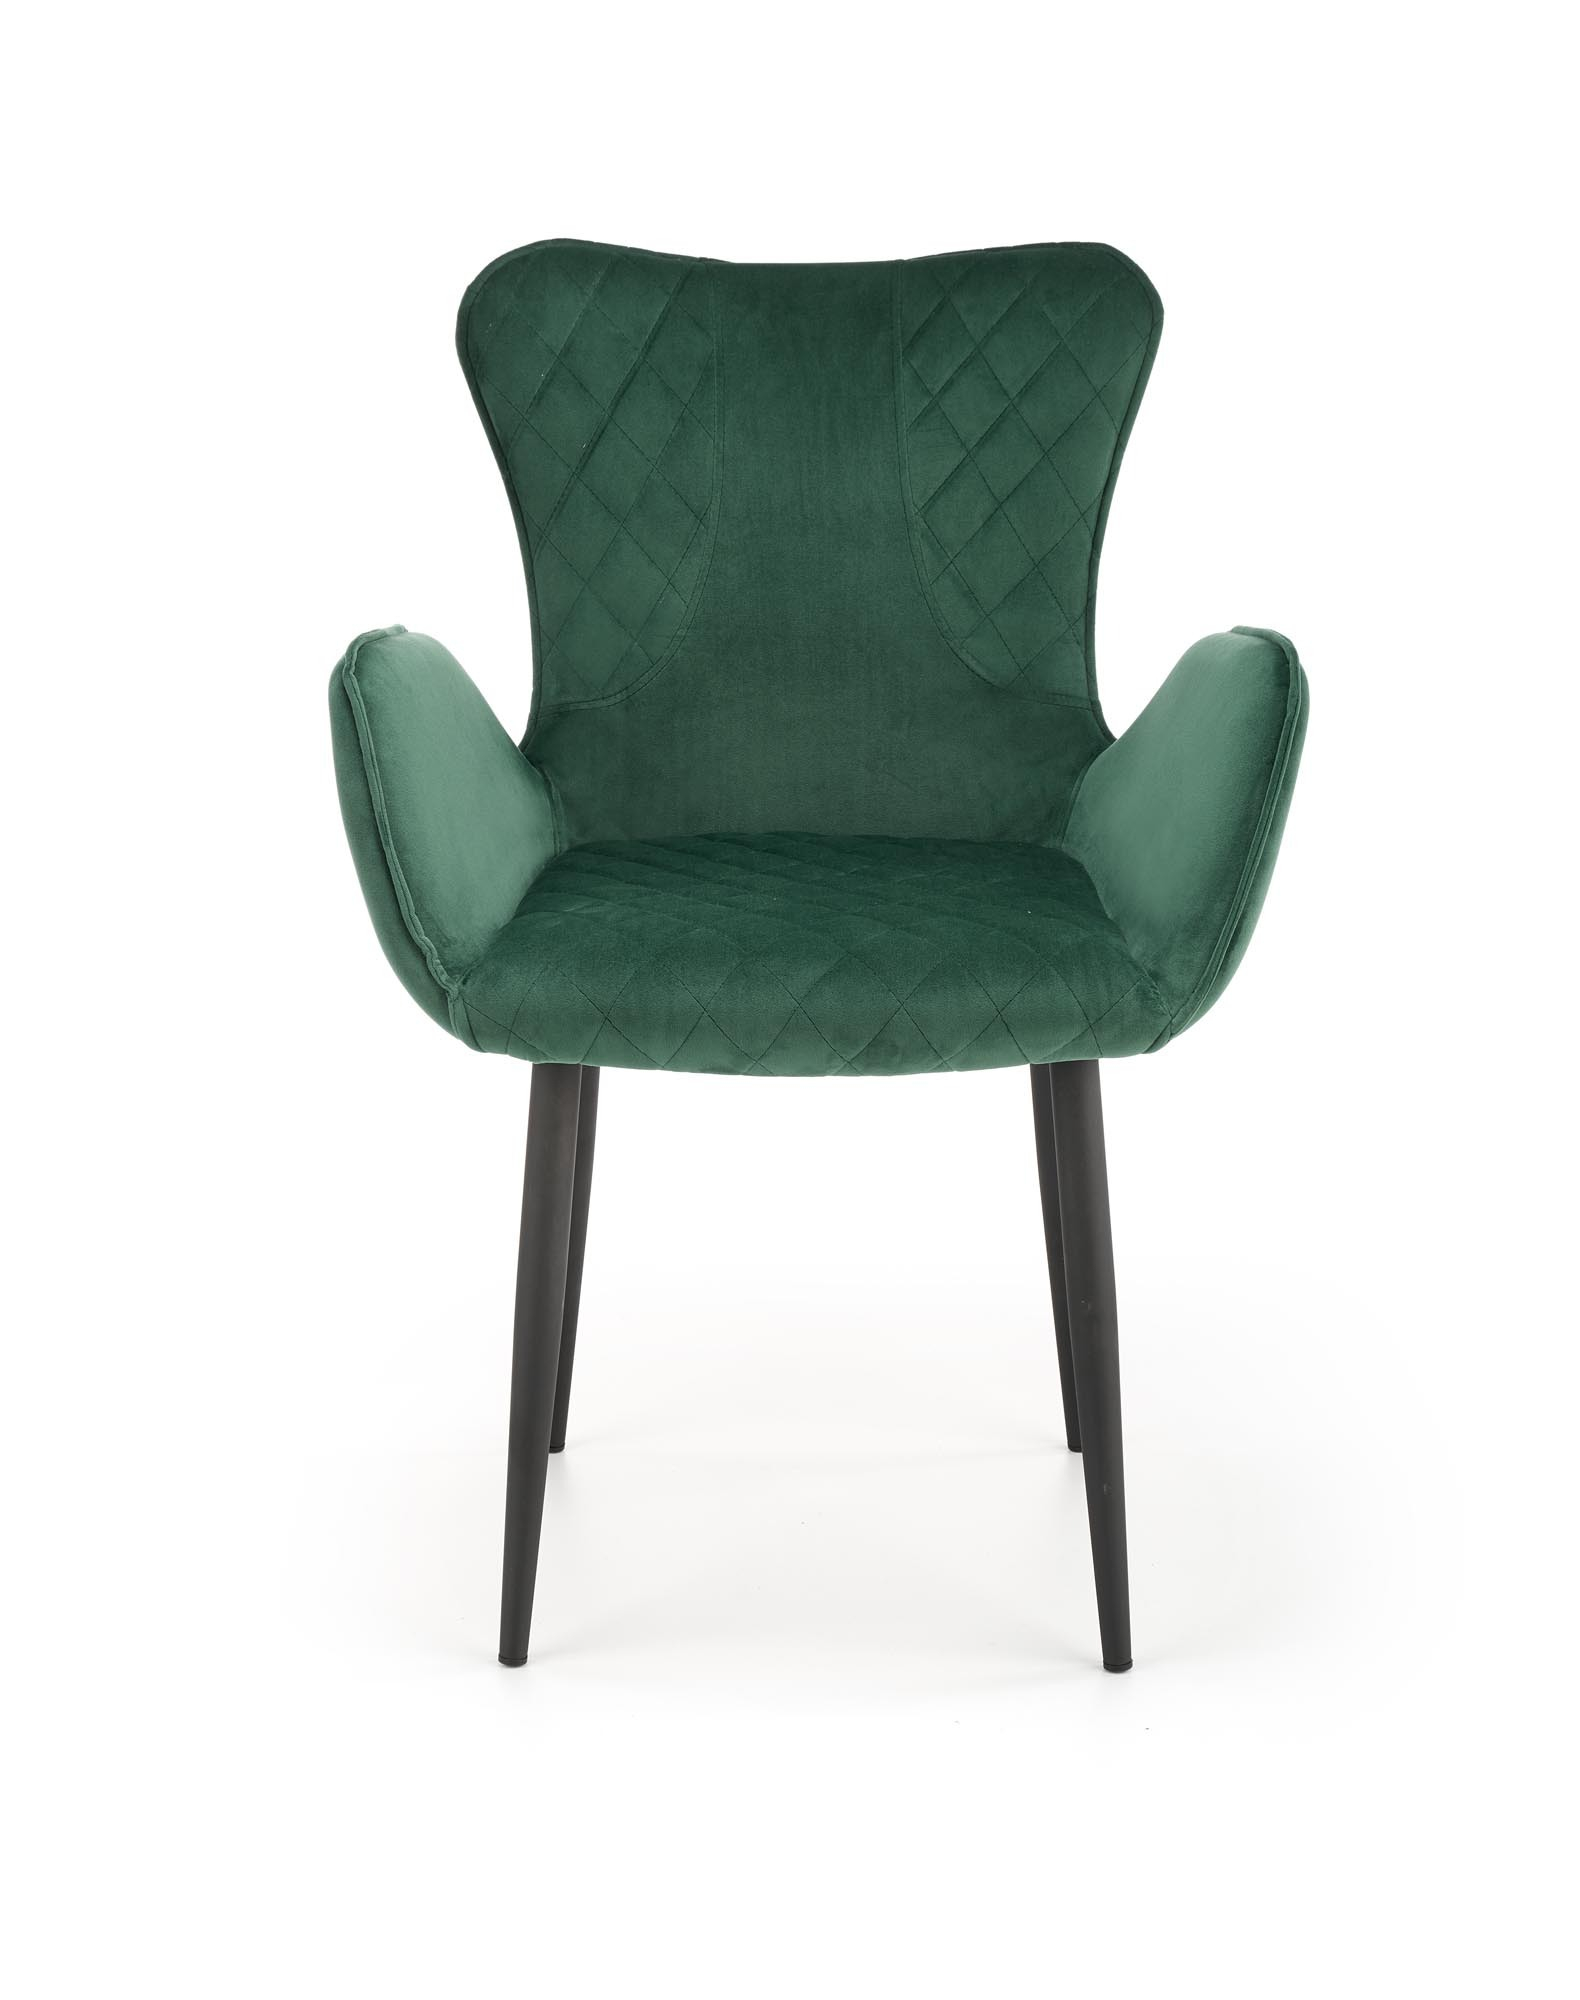 K427 krzesło ciemny zielony